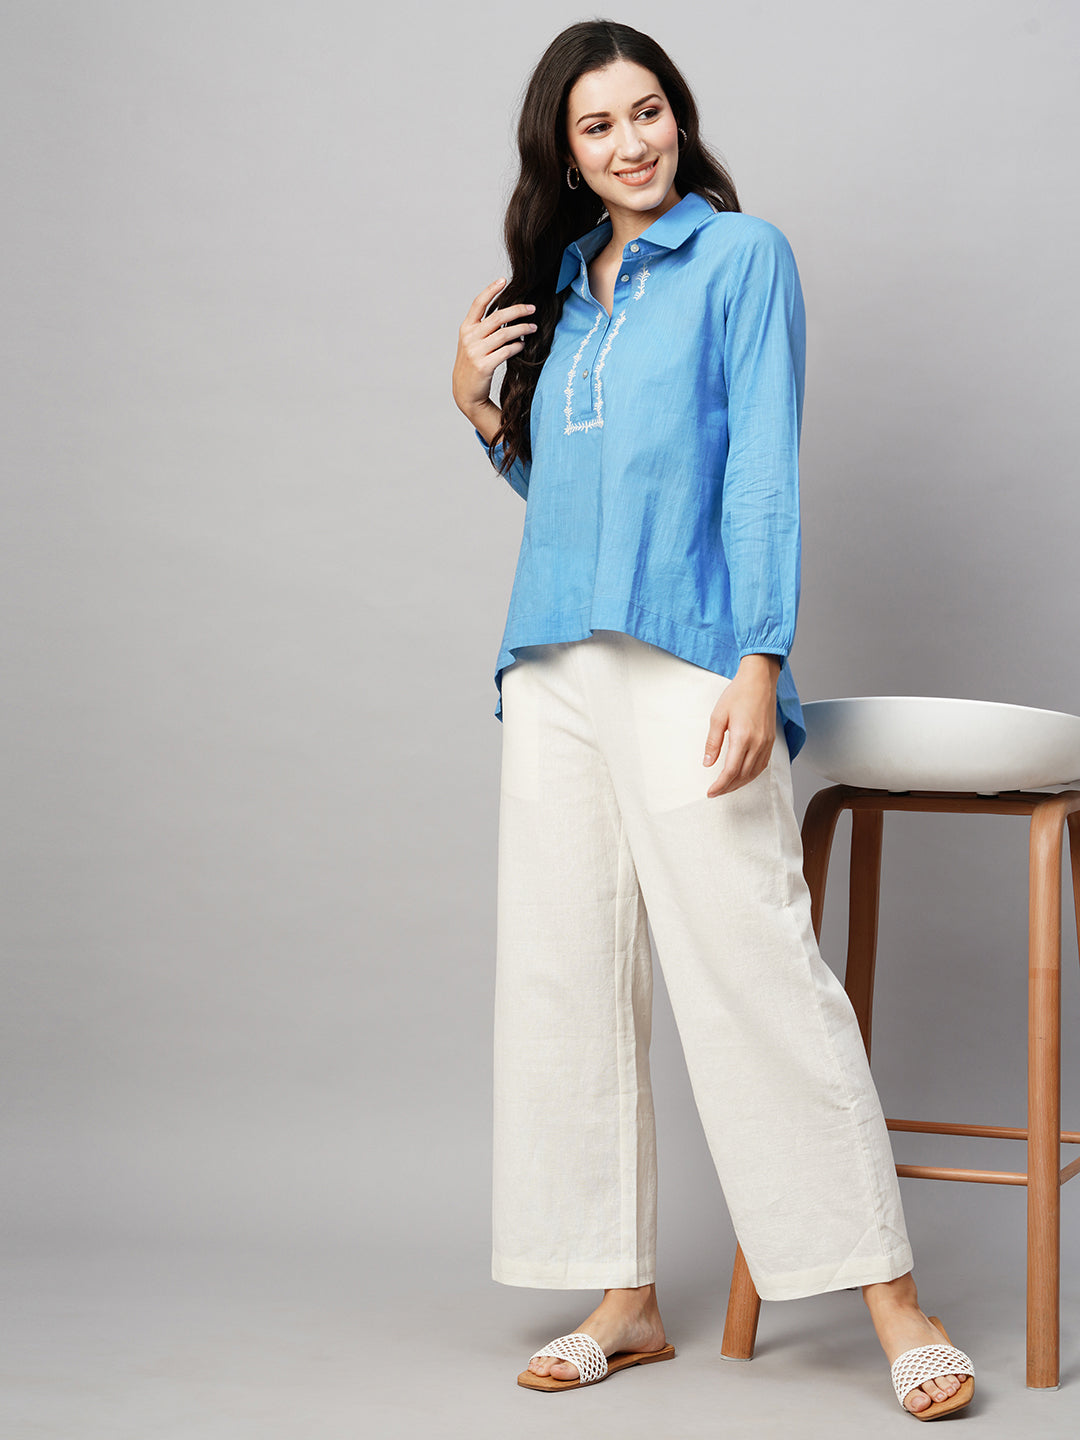 Women's Blue Cotton Regular Fit Blouse